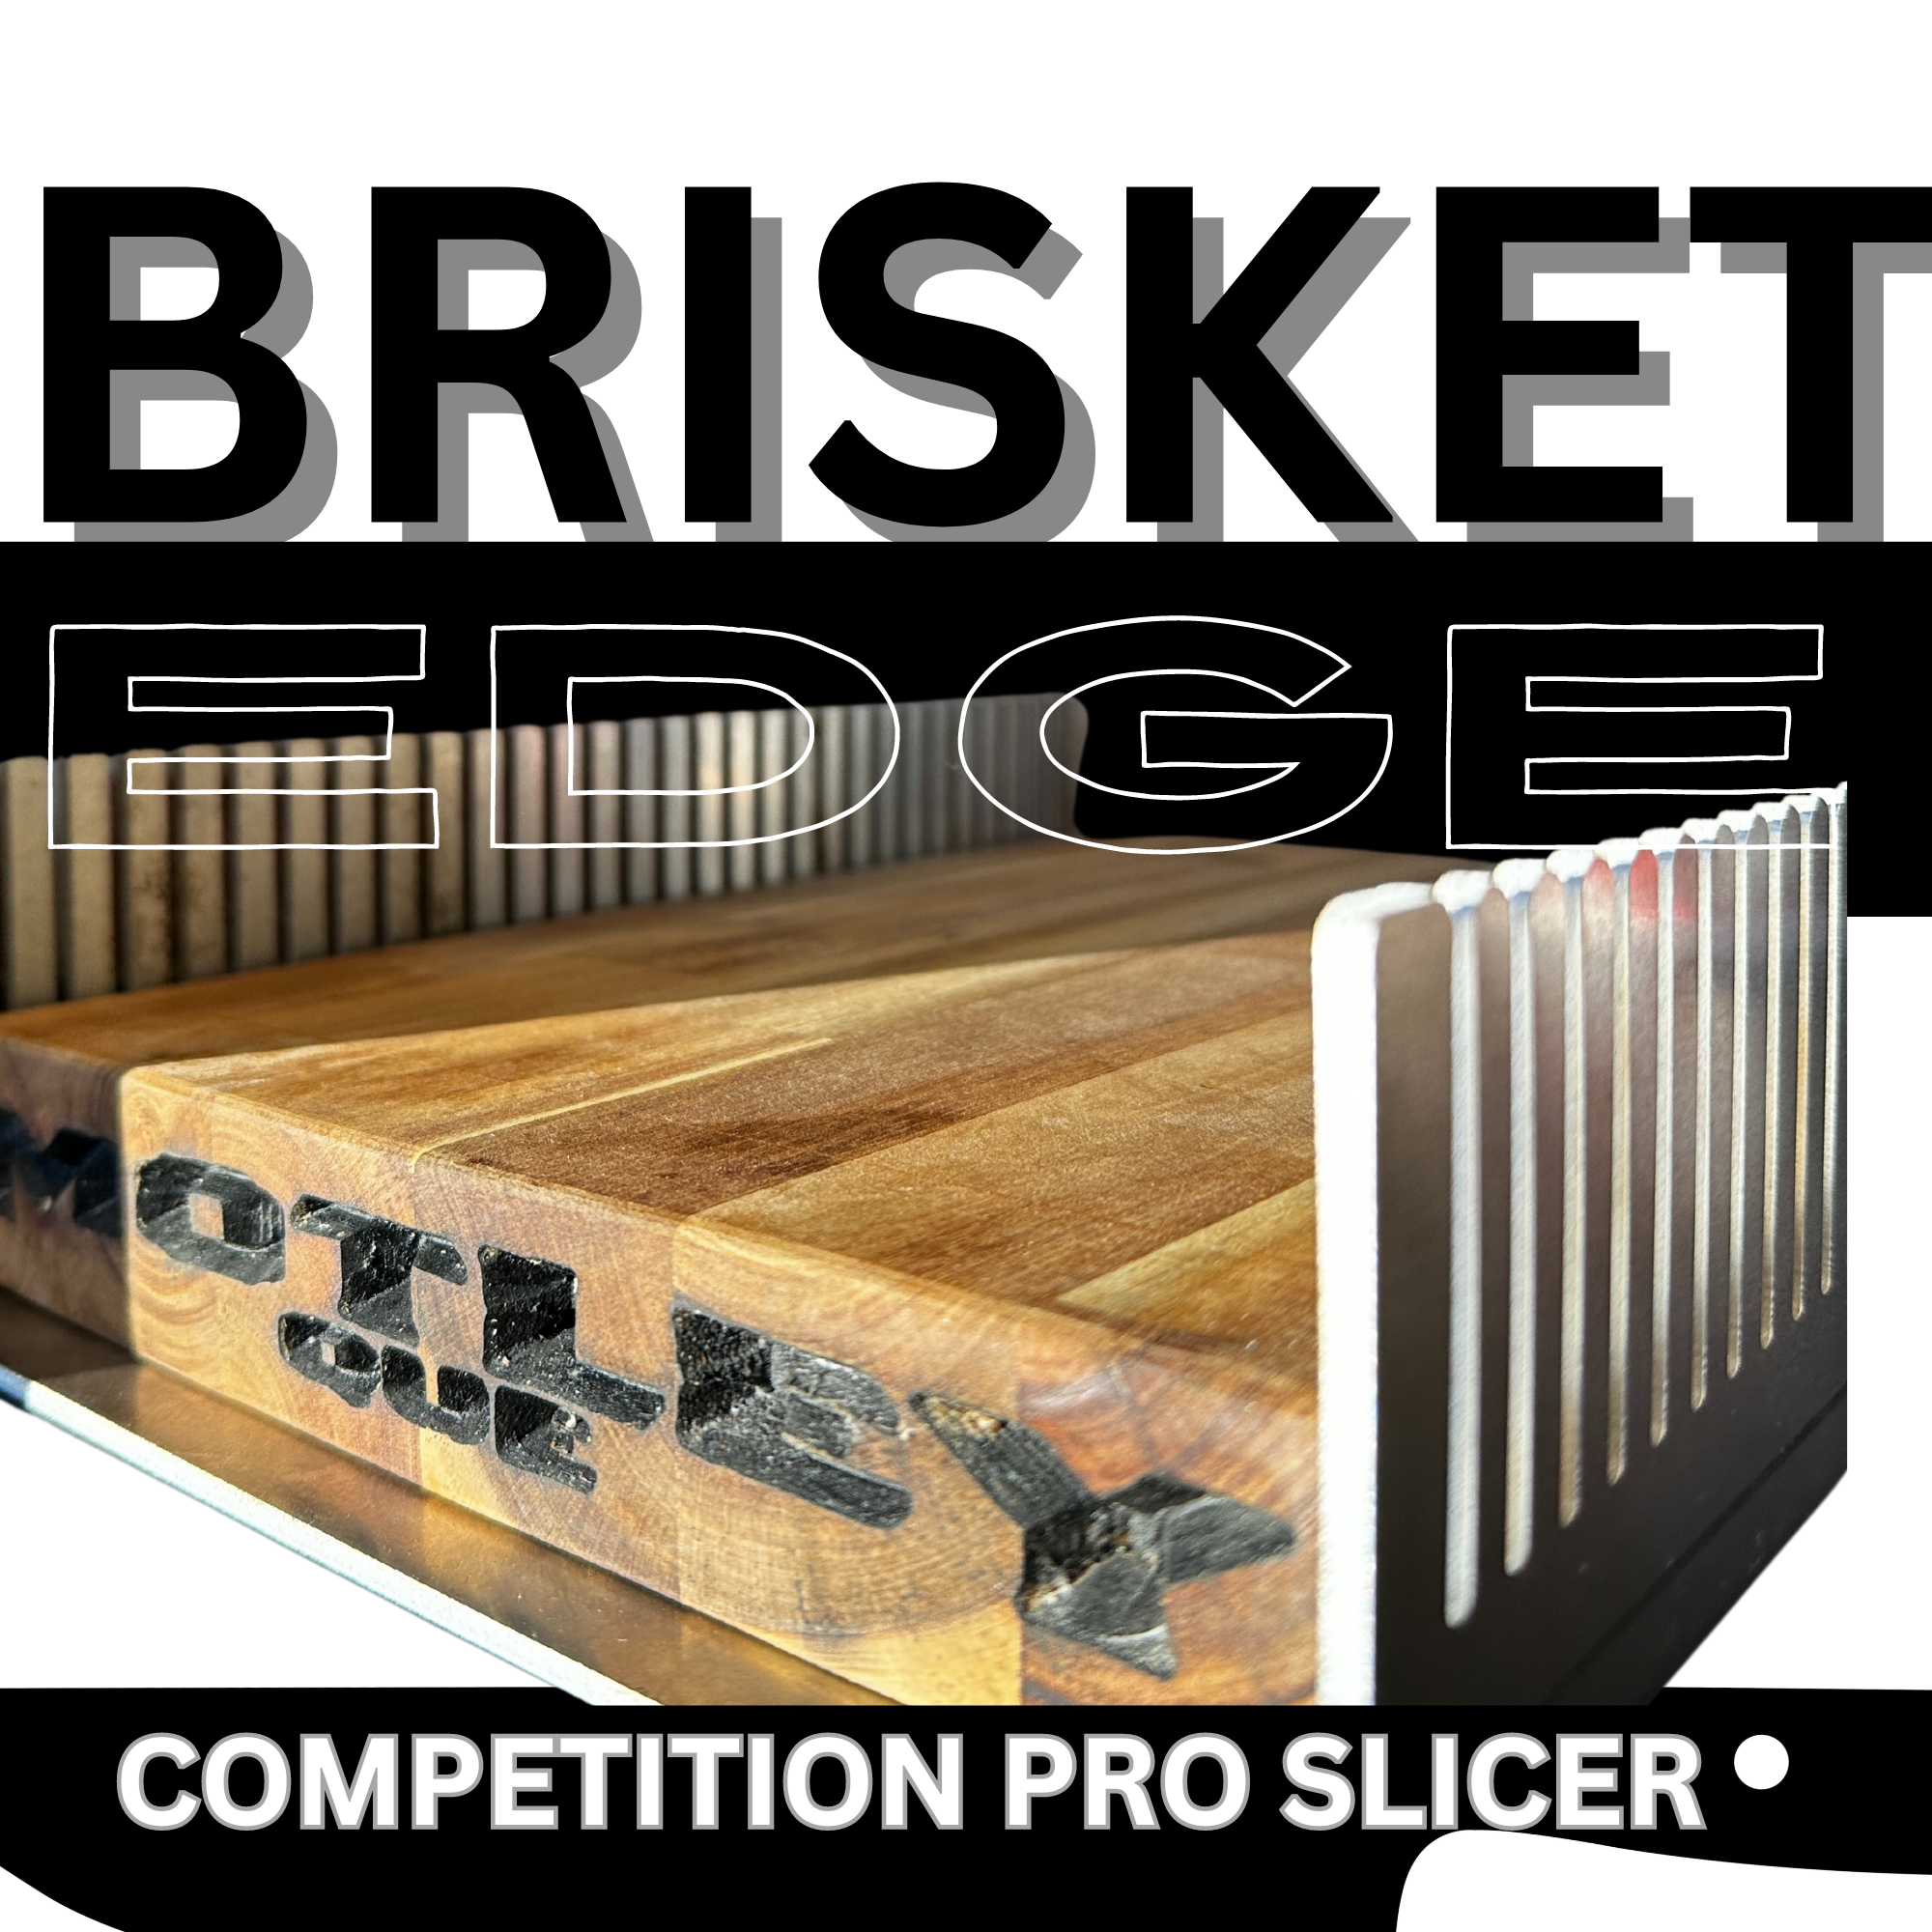 Brisket Edge Competition Slicer